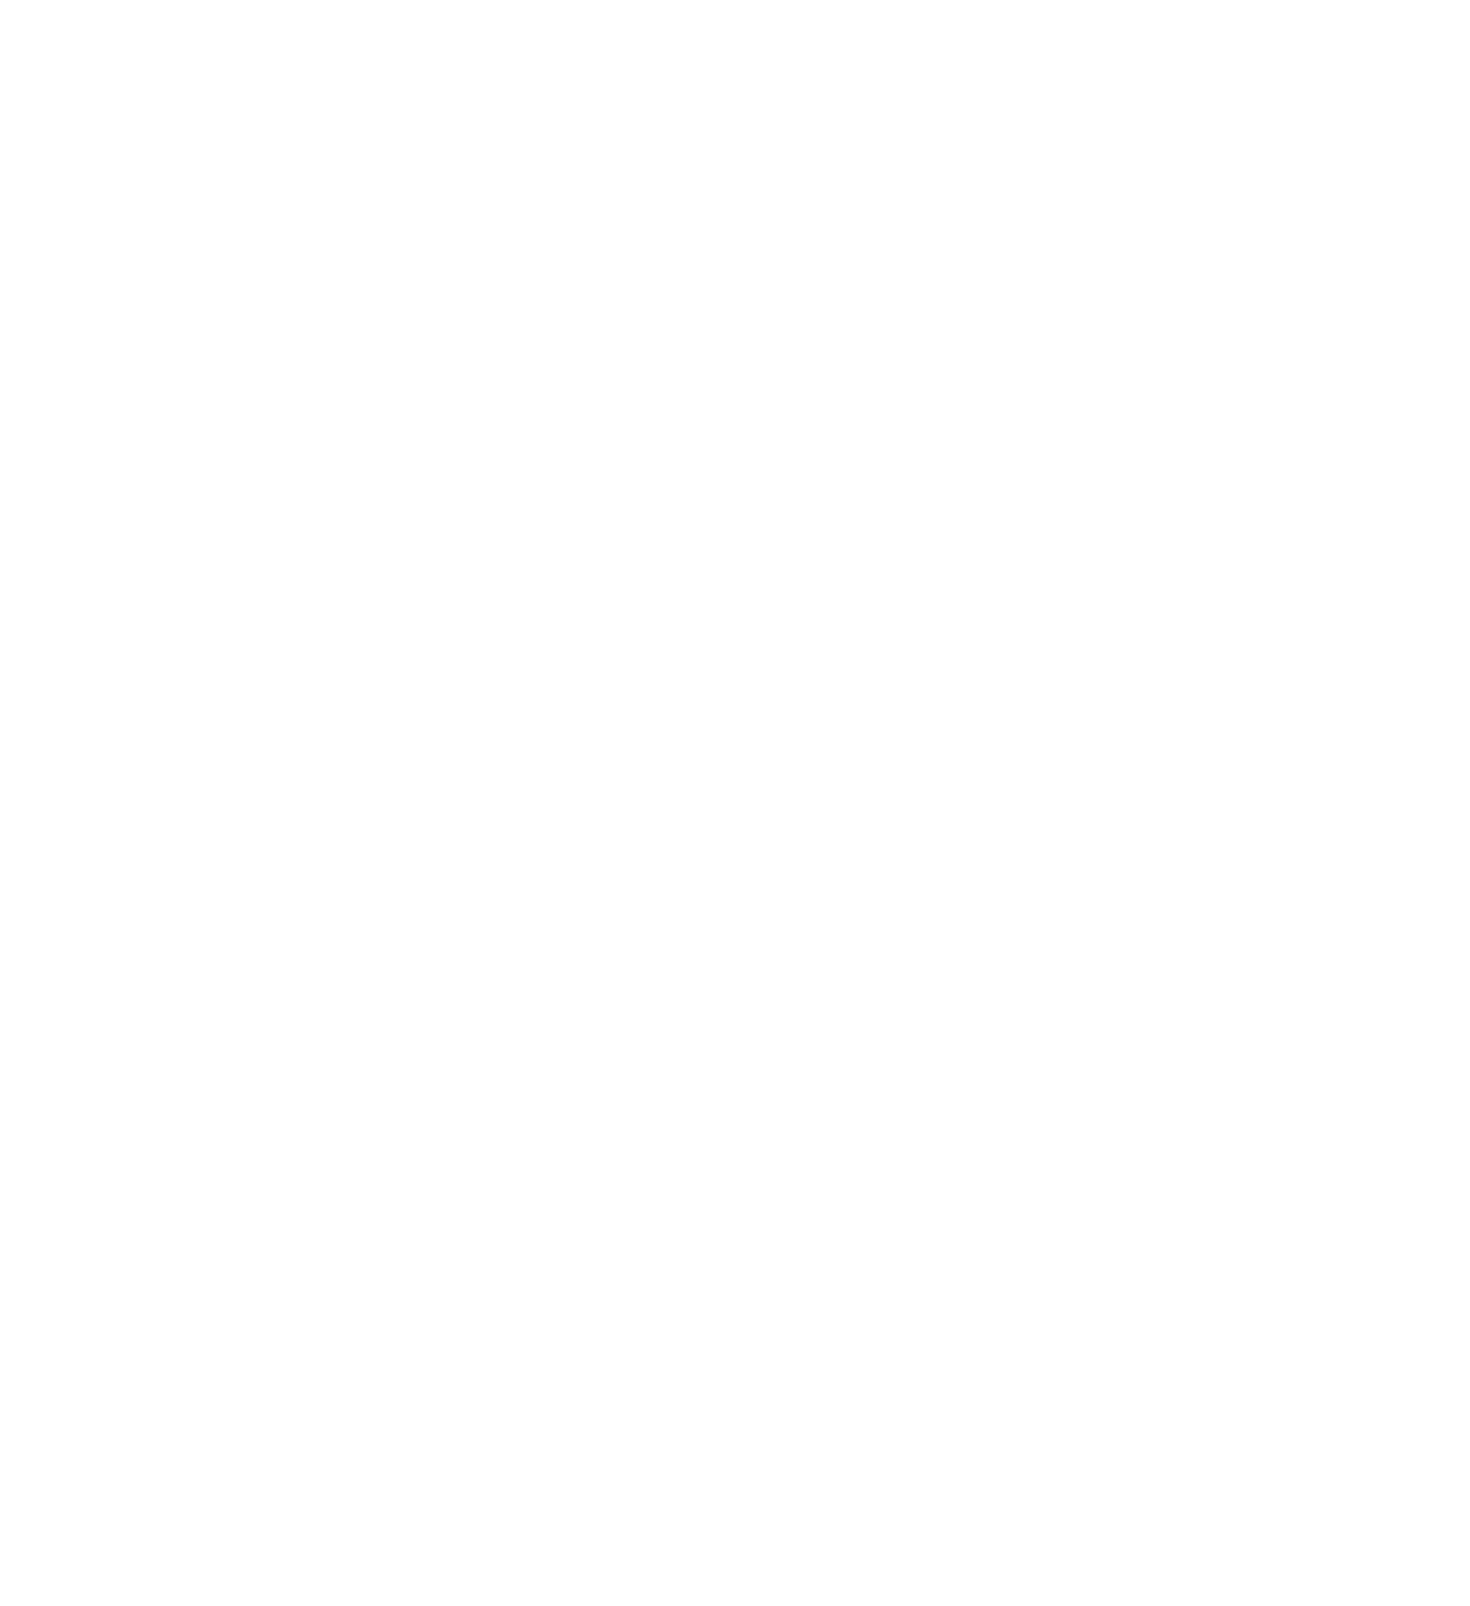 AdTheorent logo for dark backgrounds (transparent PNG)